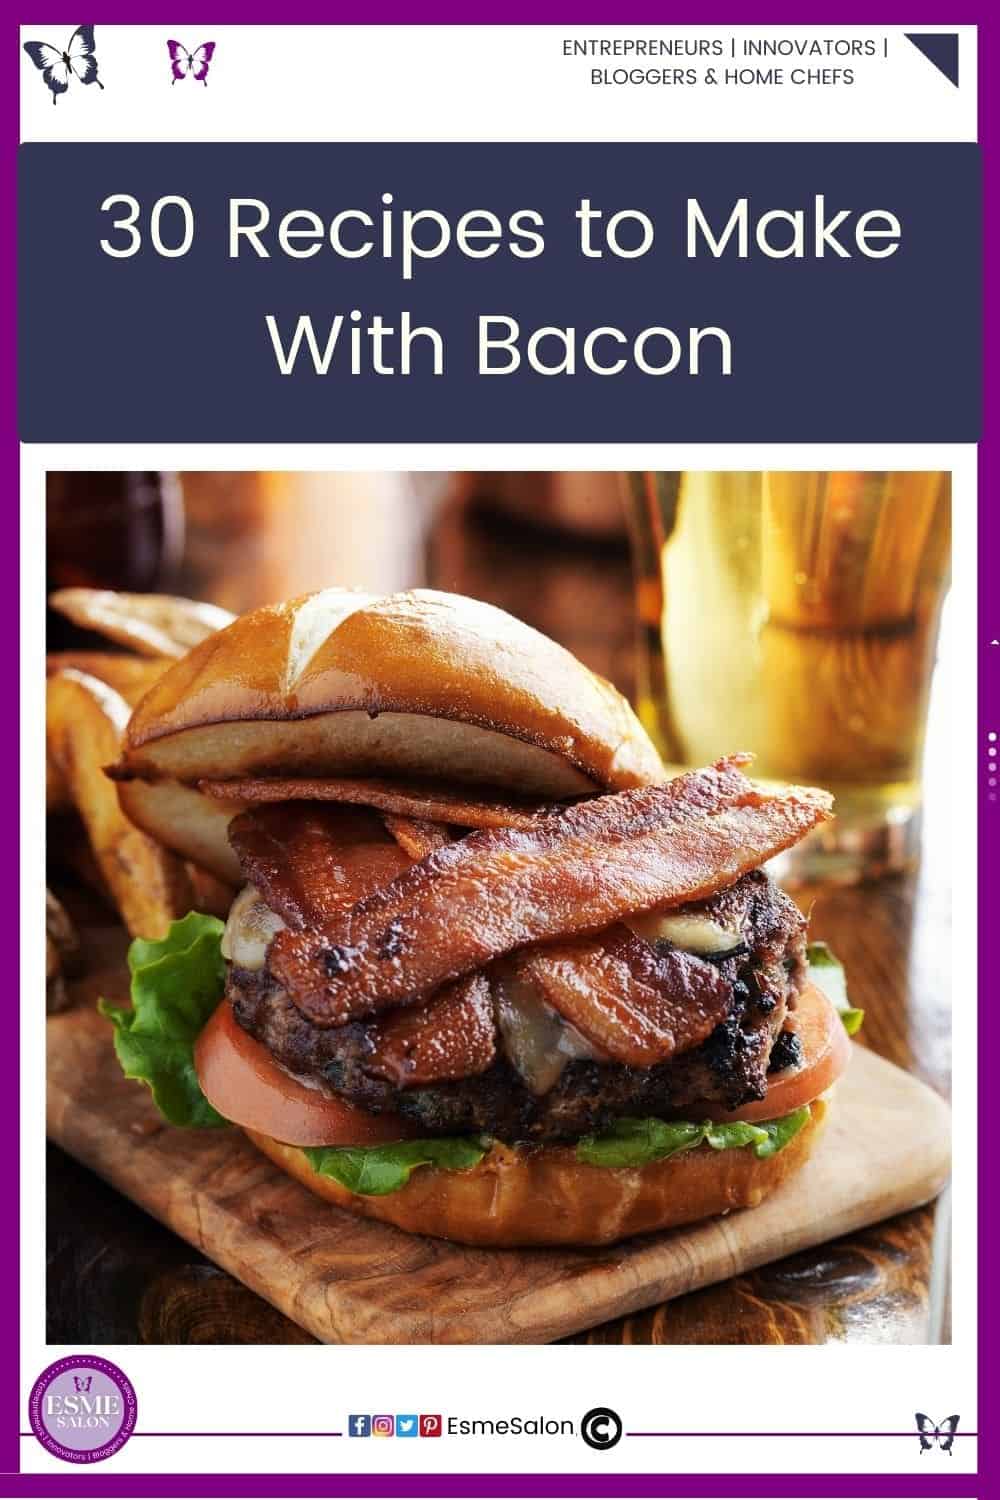 an image of a bacon burger